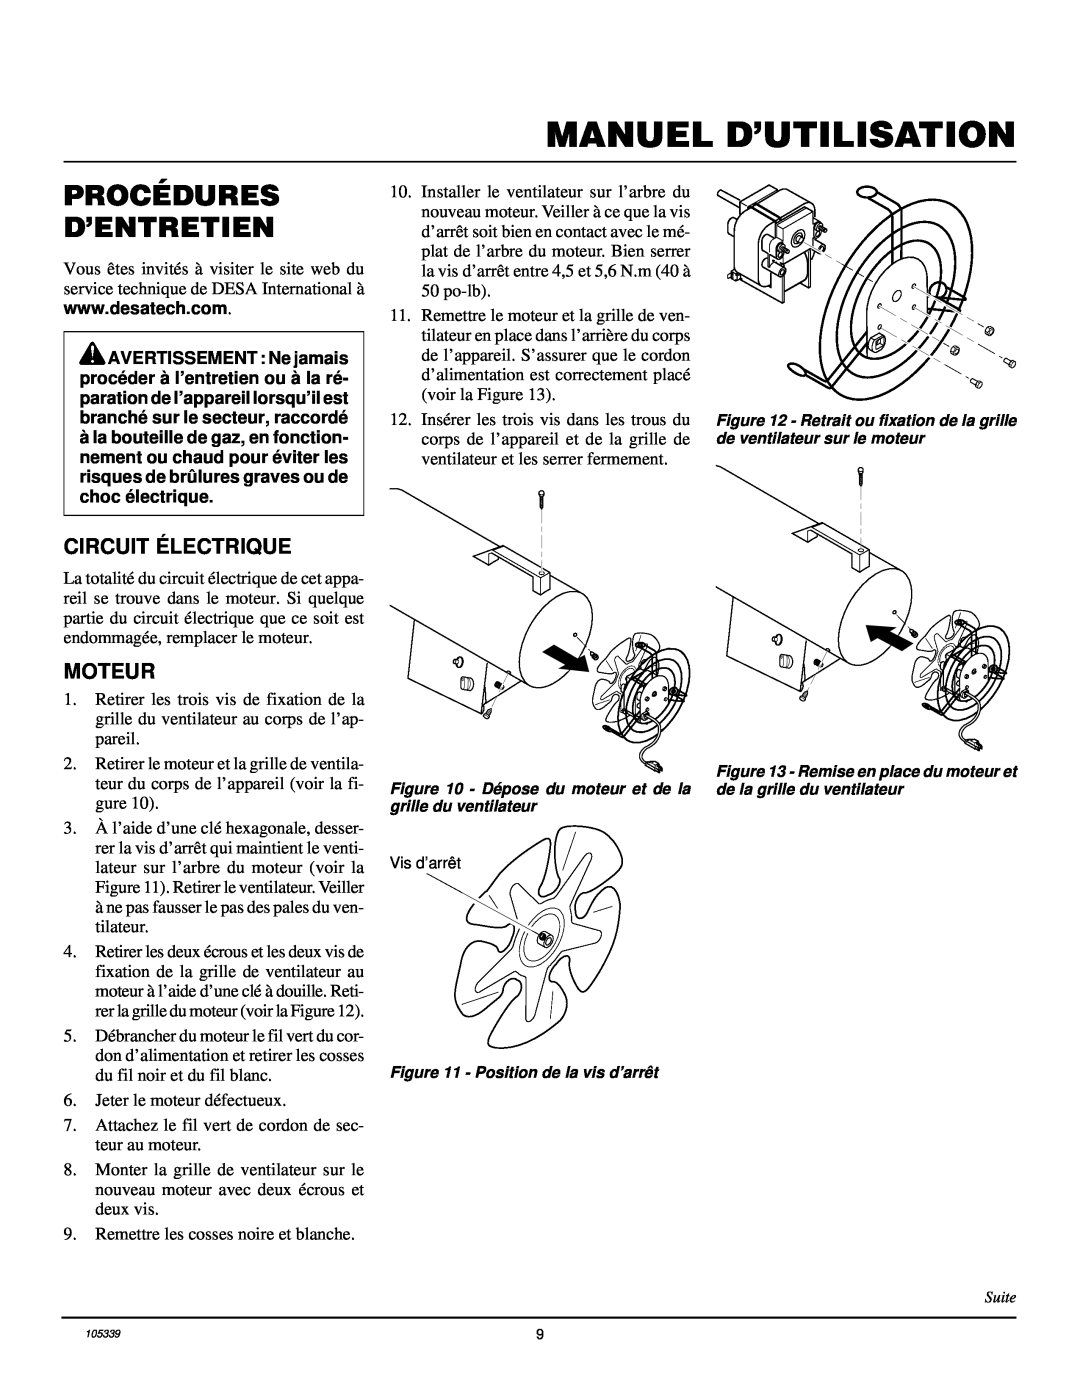 Desa RCLP50VA owner manual Procédures D’Entretien, Manuel D’Utilisation, Circuit Électrique, Moteur 